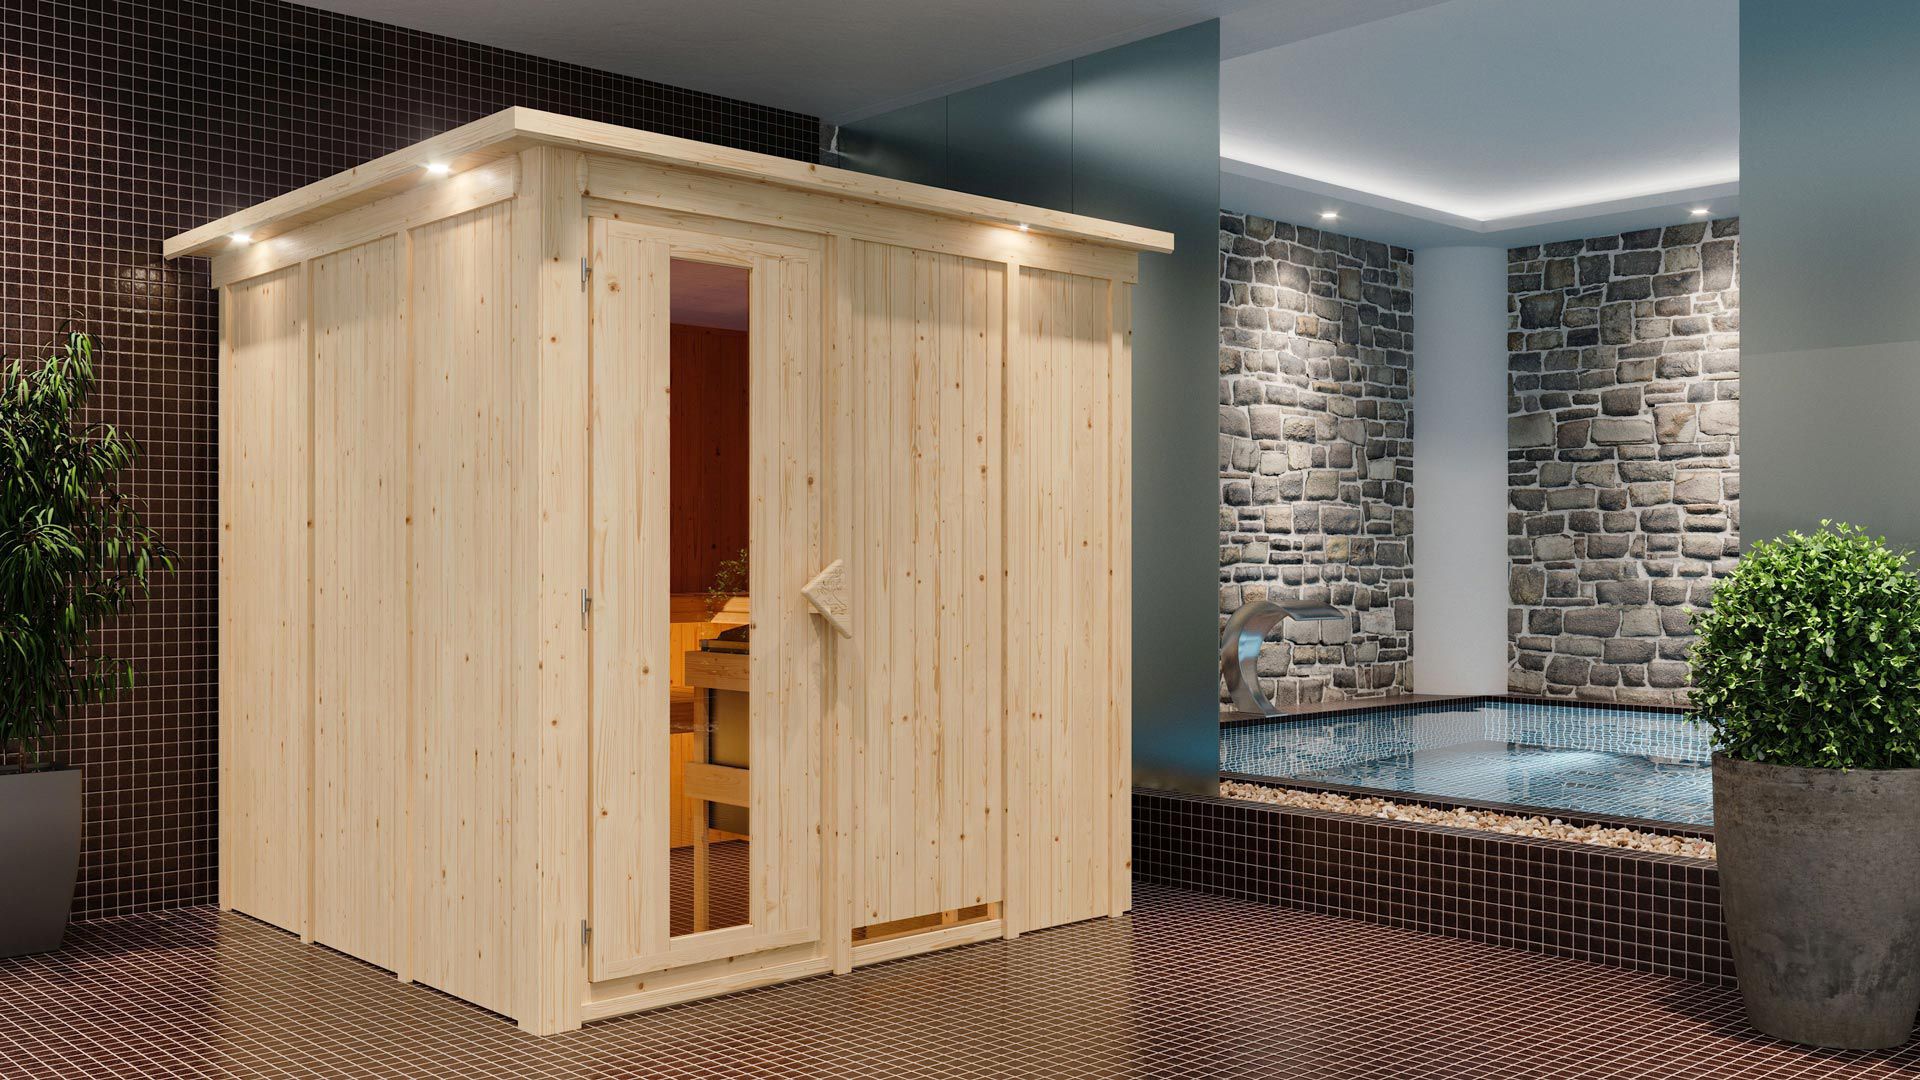 Sauna "Aleksi" SET mit Energiespartür und Kranz - Farbe: Natur, Ofen externe Steuerung easy 9 kW - 210 x 210 x 202 cm (B x T x H)